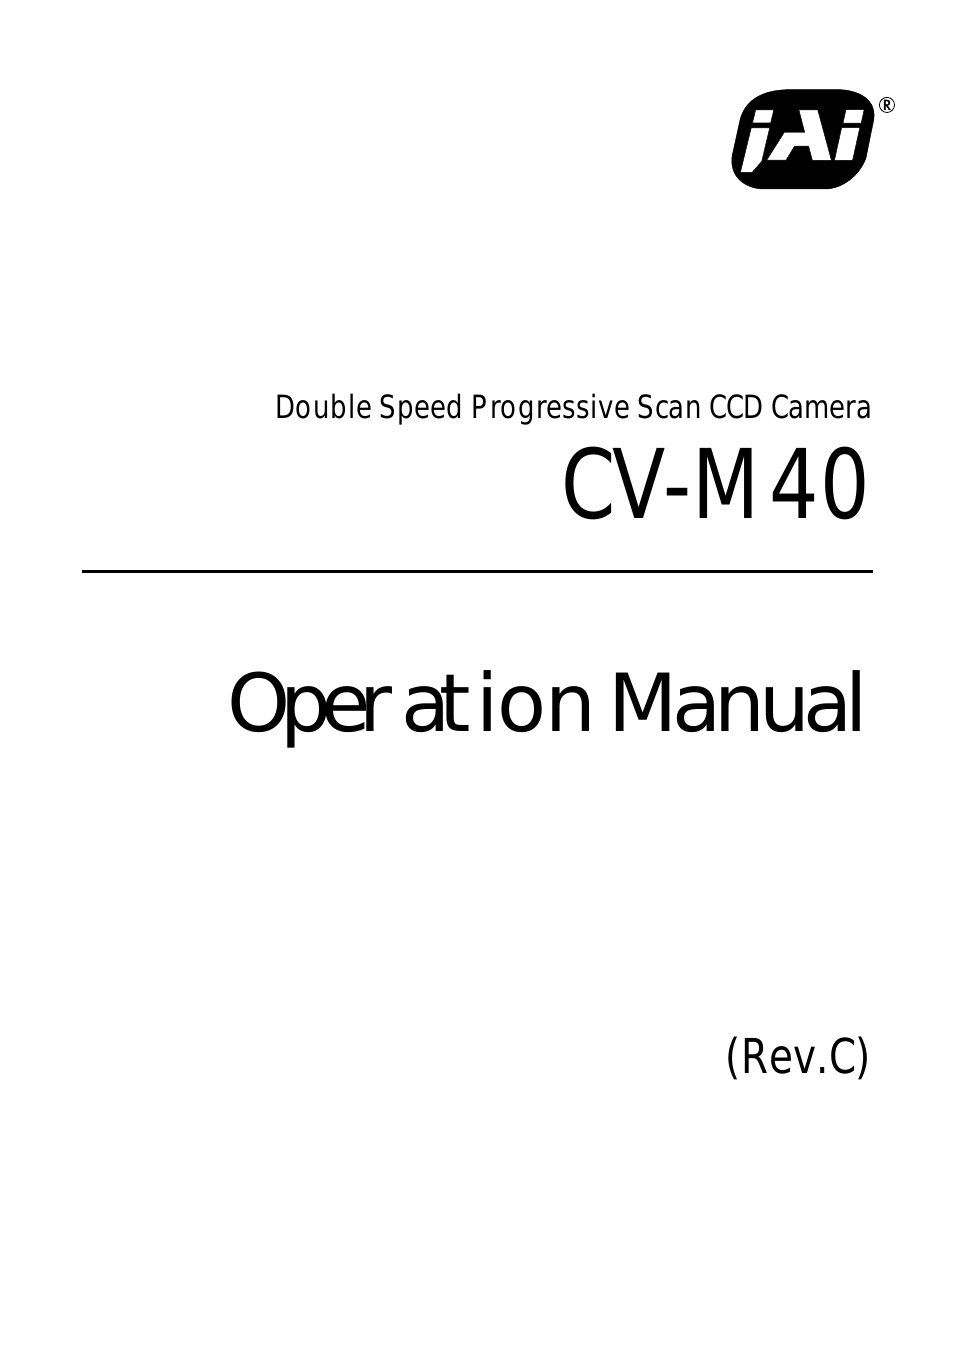 CV-M40